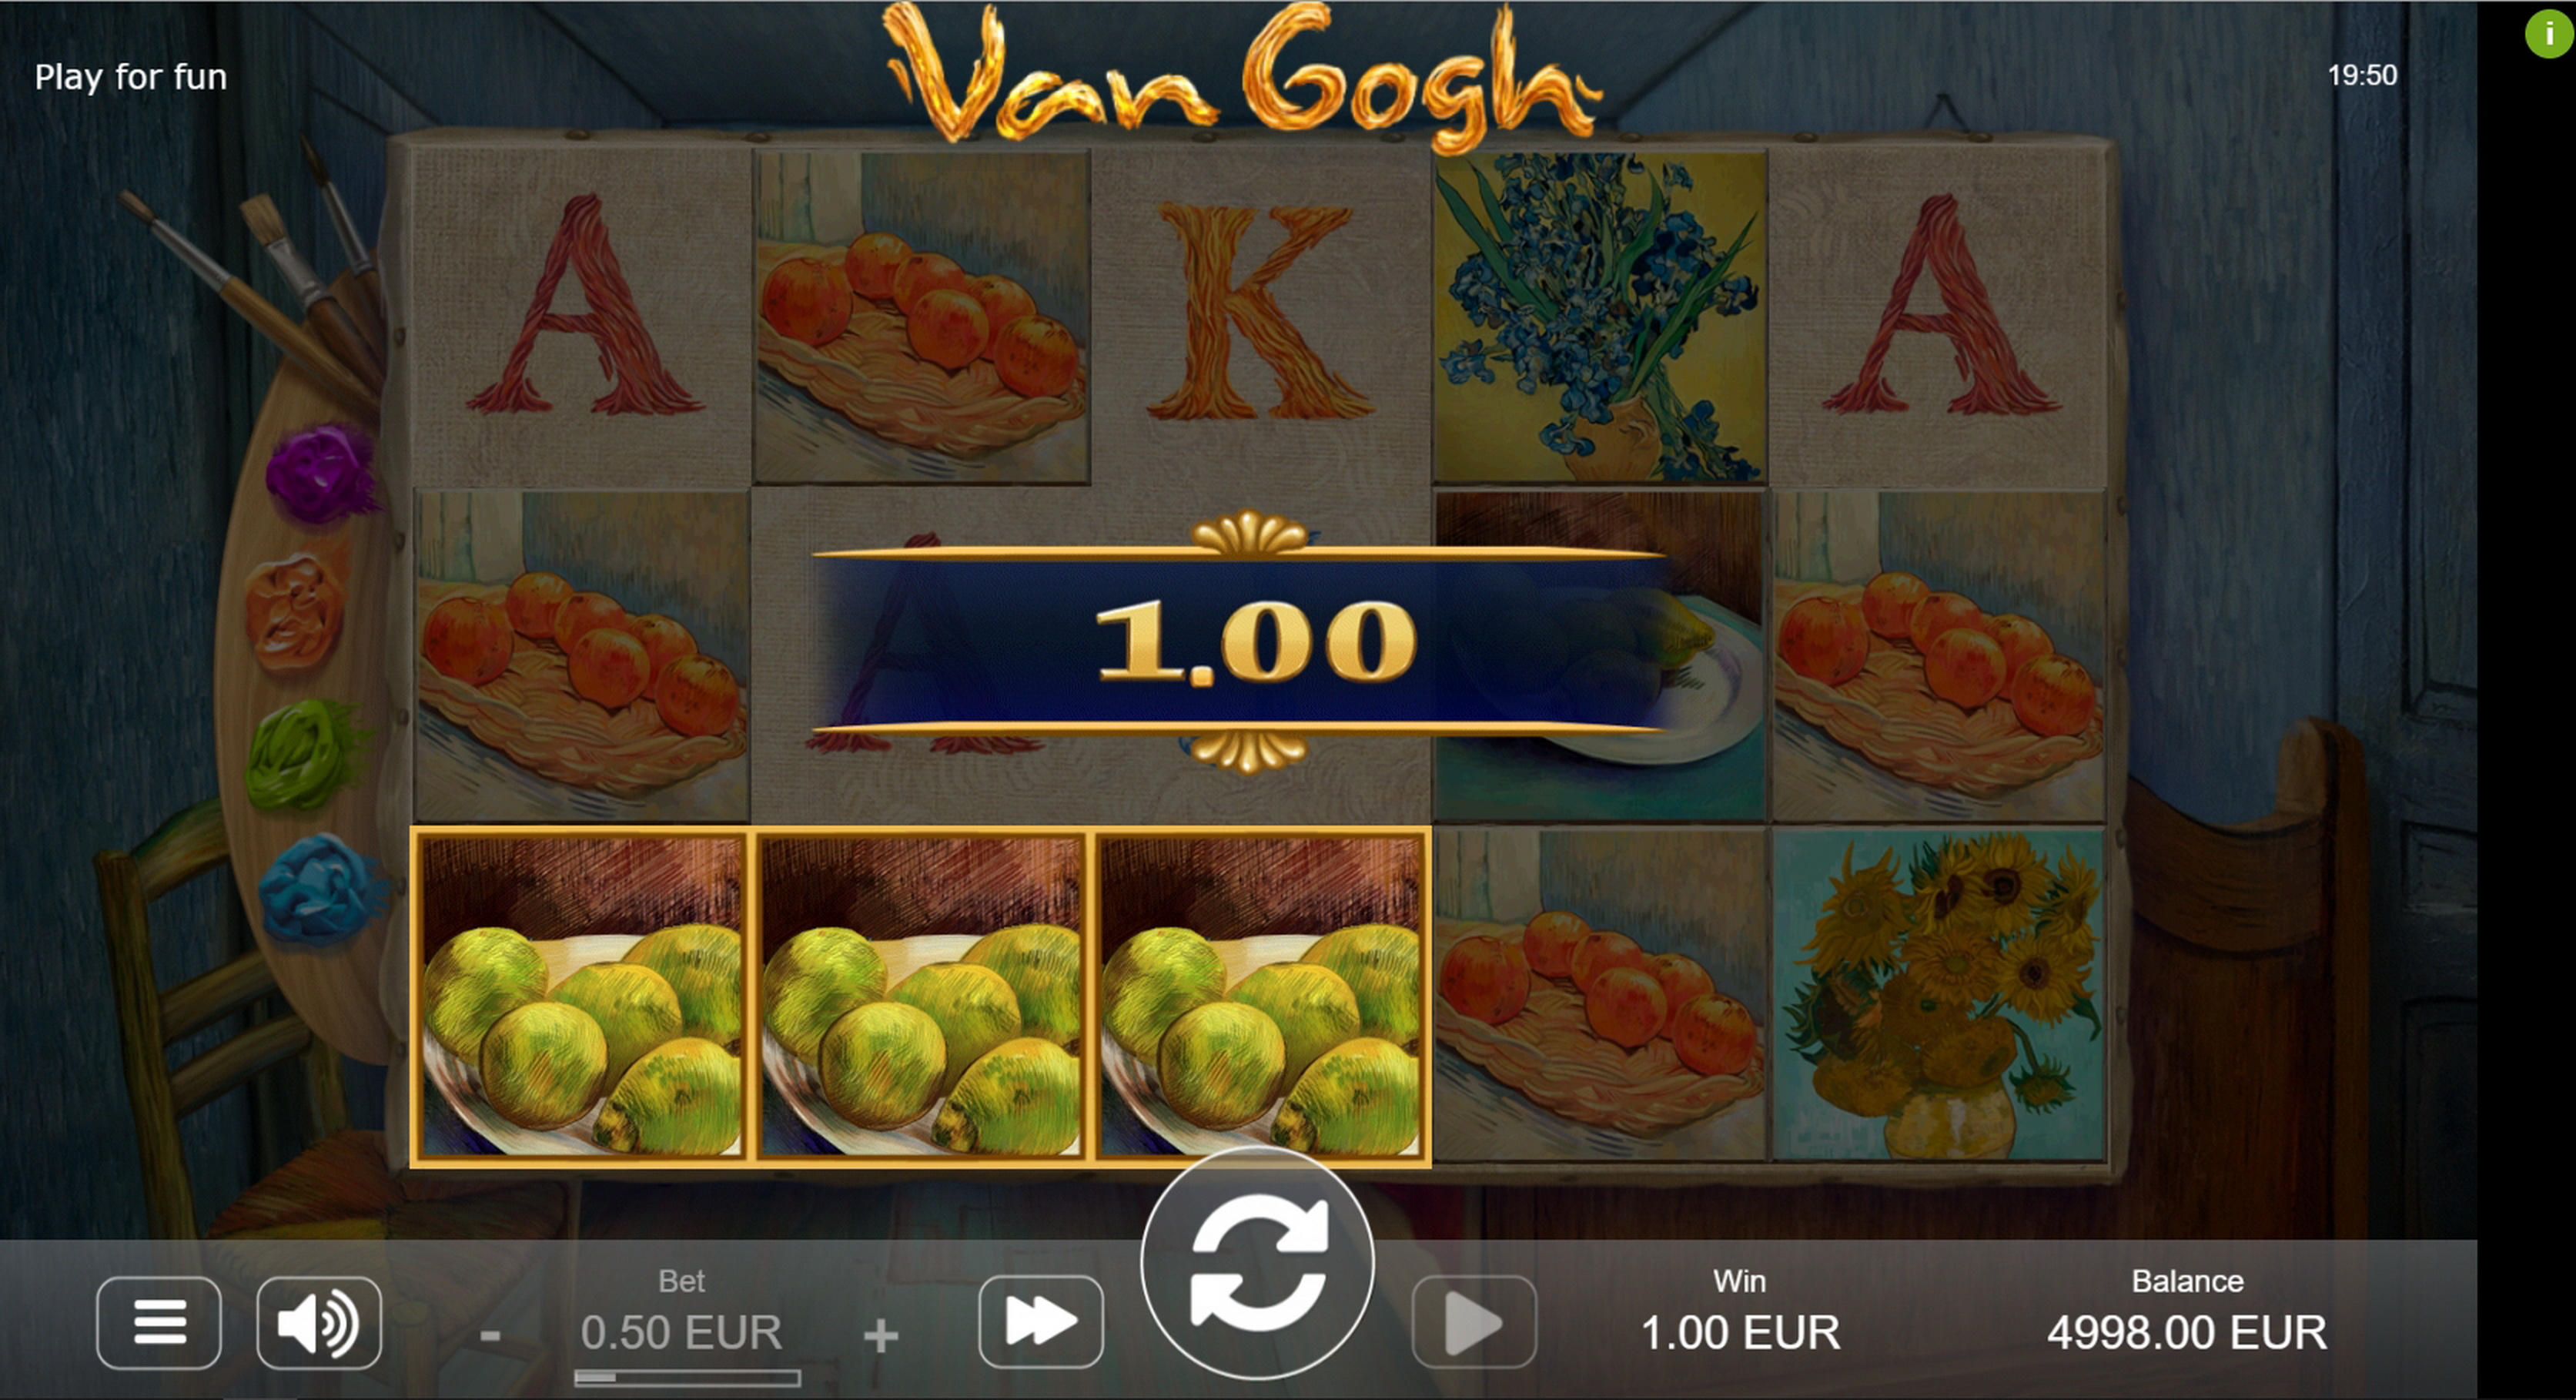 Win Money in Van Gogh Free Slot Game by STHLM Gaming